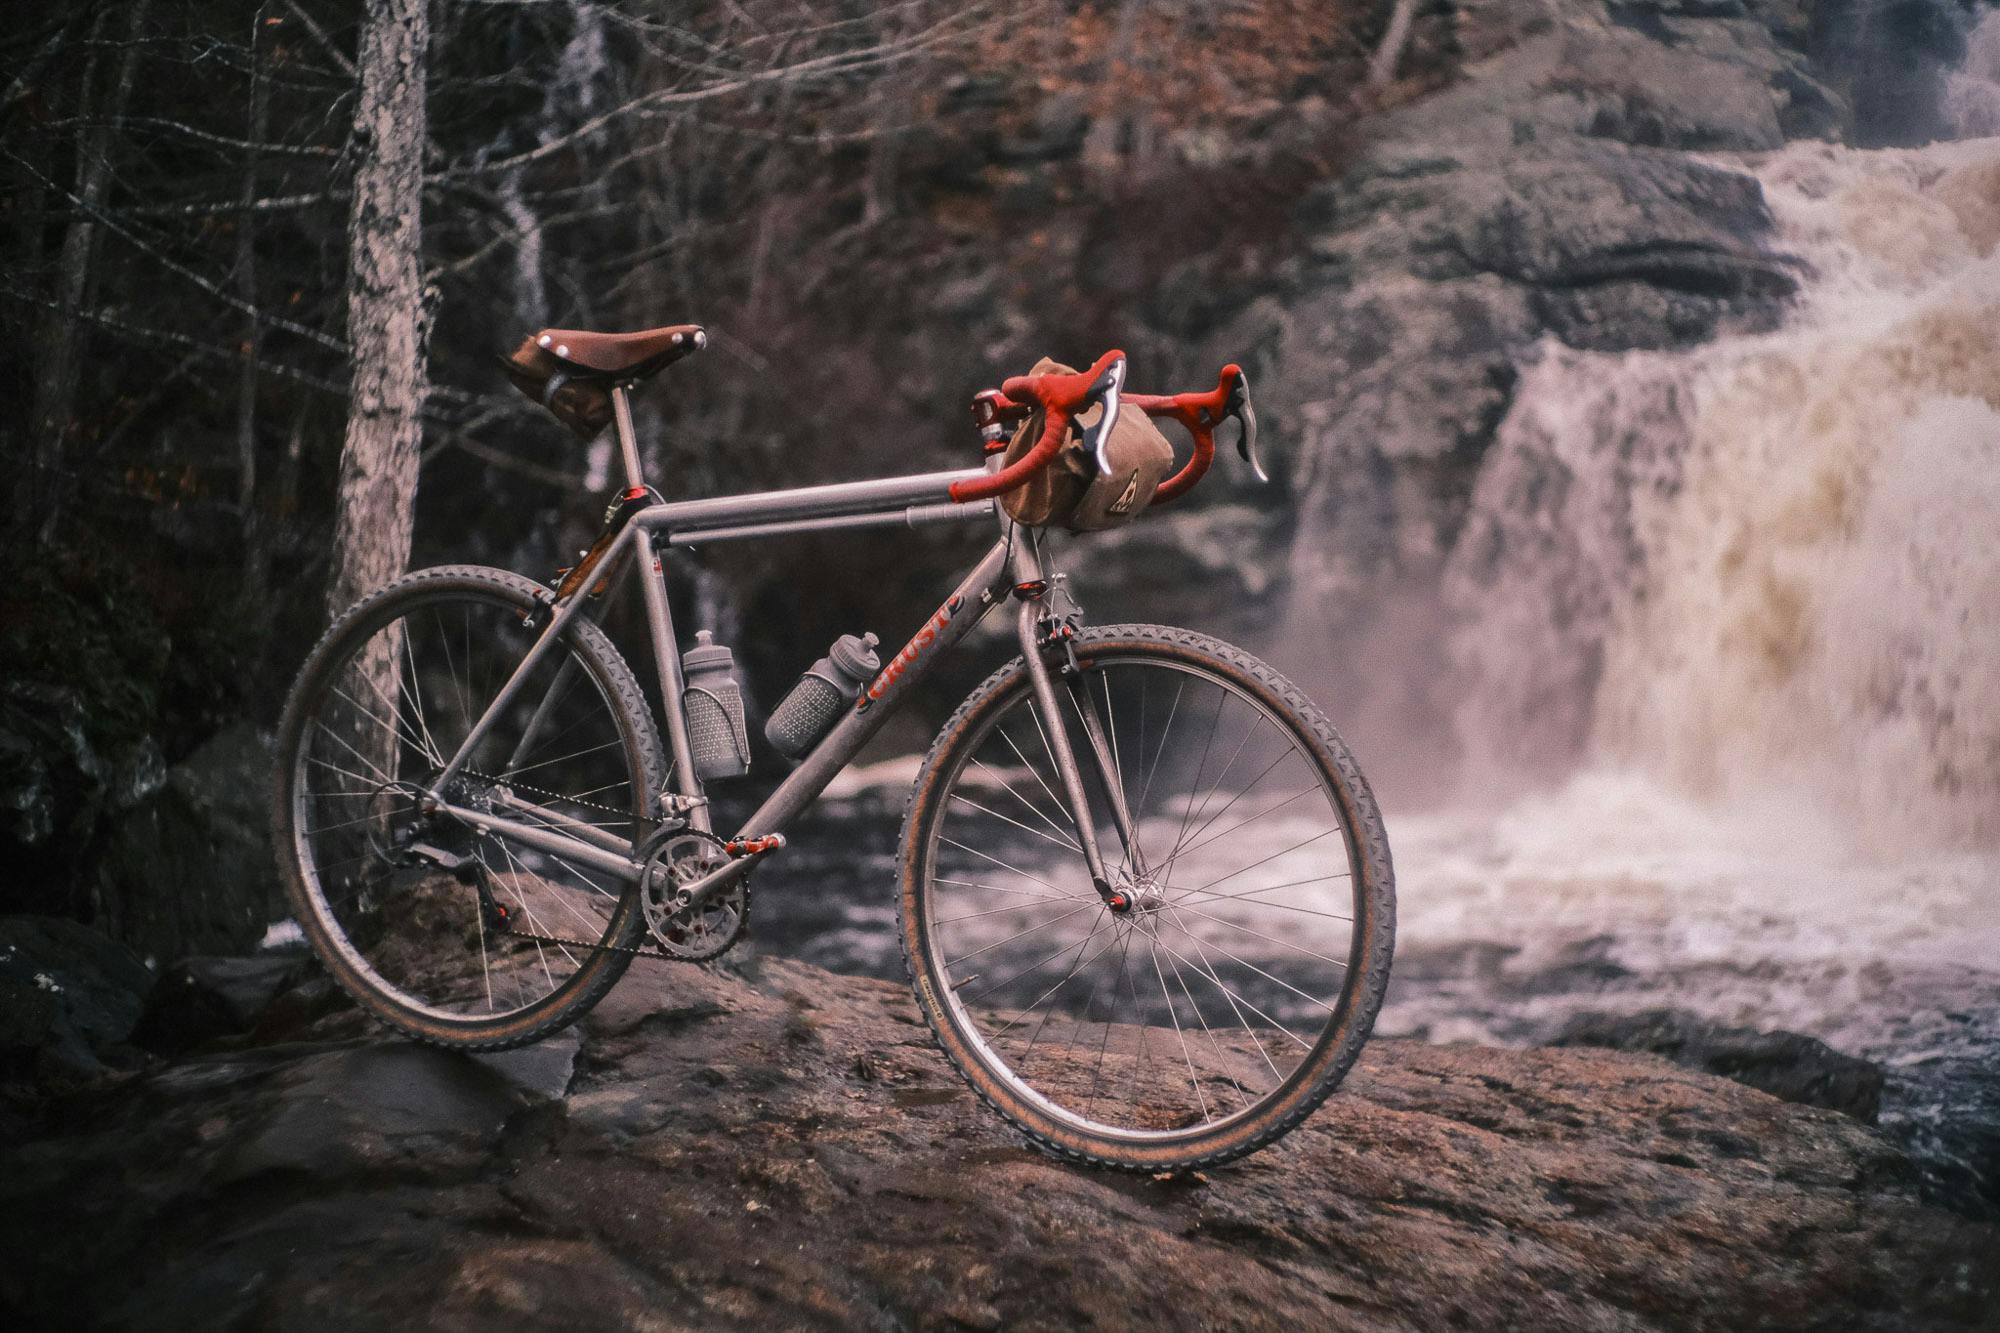 Ronnies Crust bike near a waterfall.